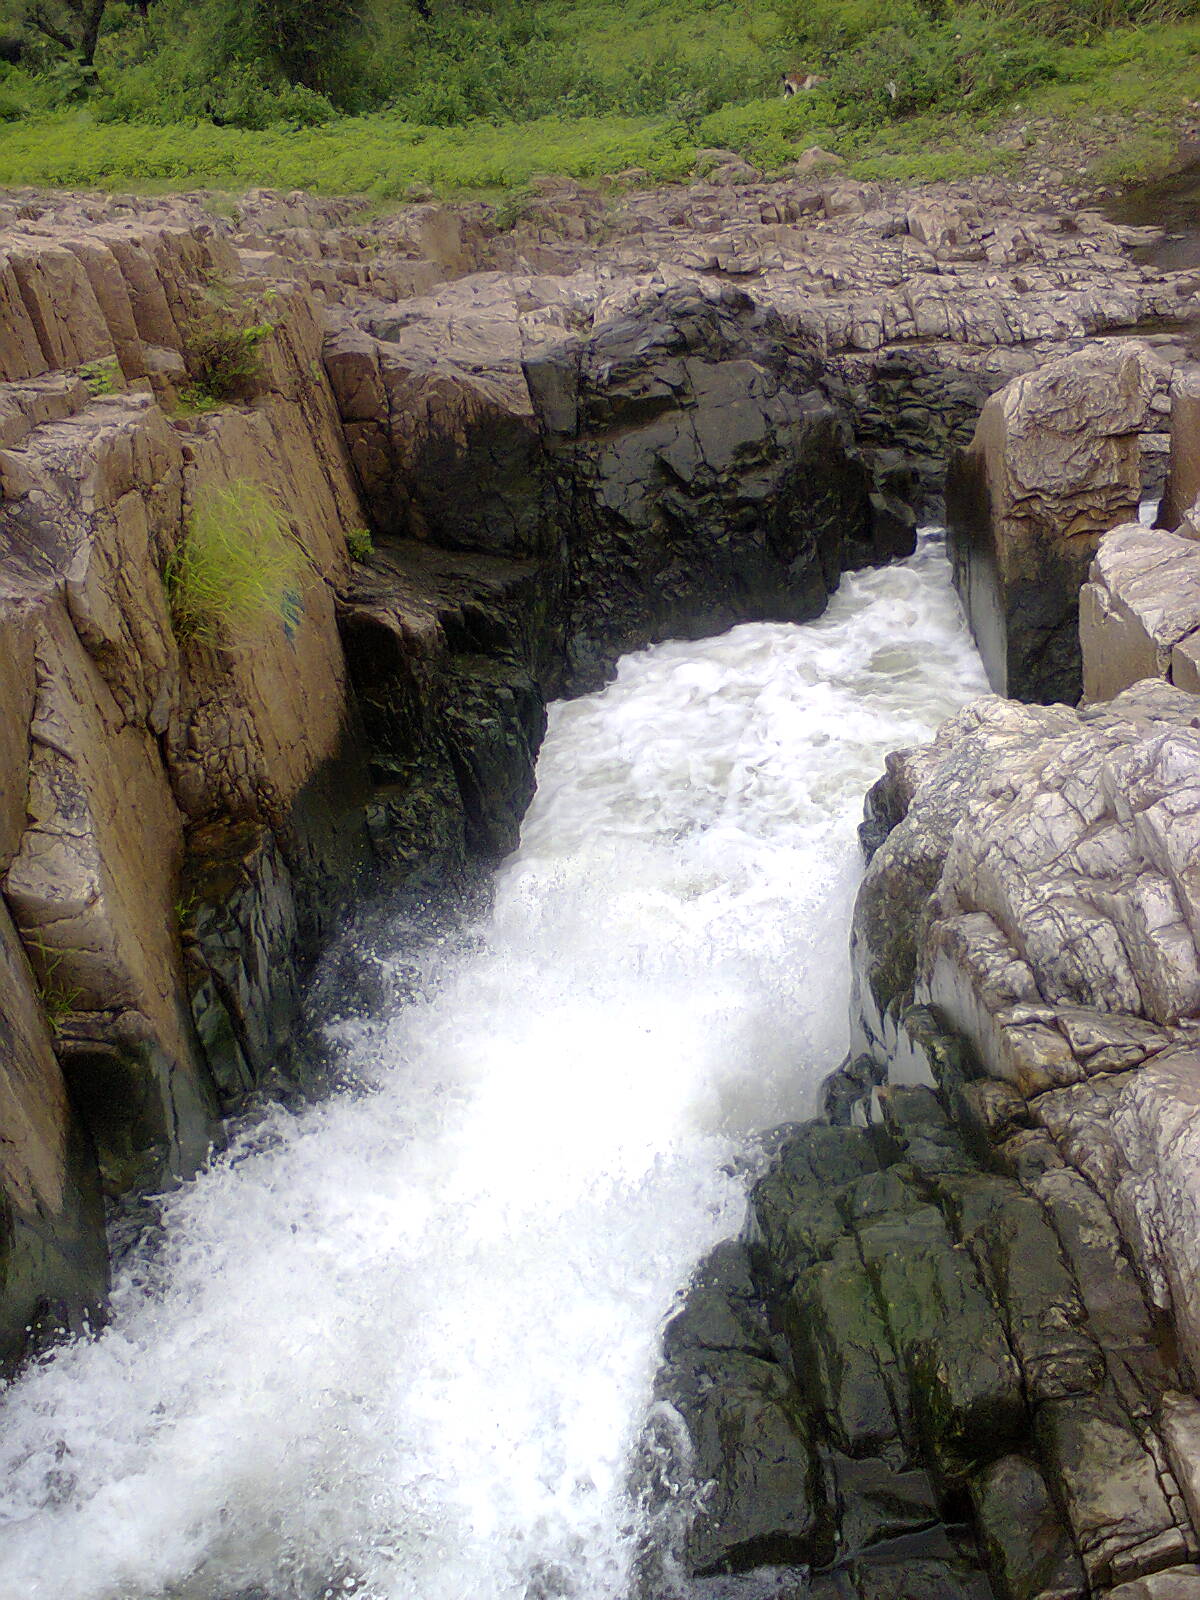 File:Devzari Water Flow, Dahod, Gujarat(3).jpg - Wikimedia Commons